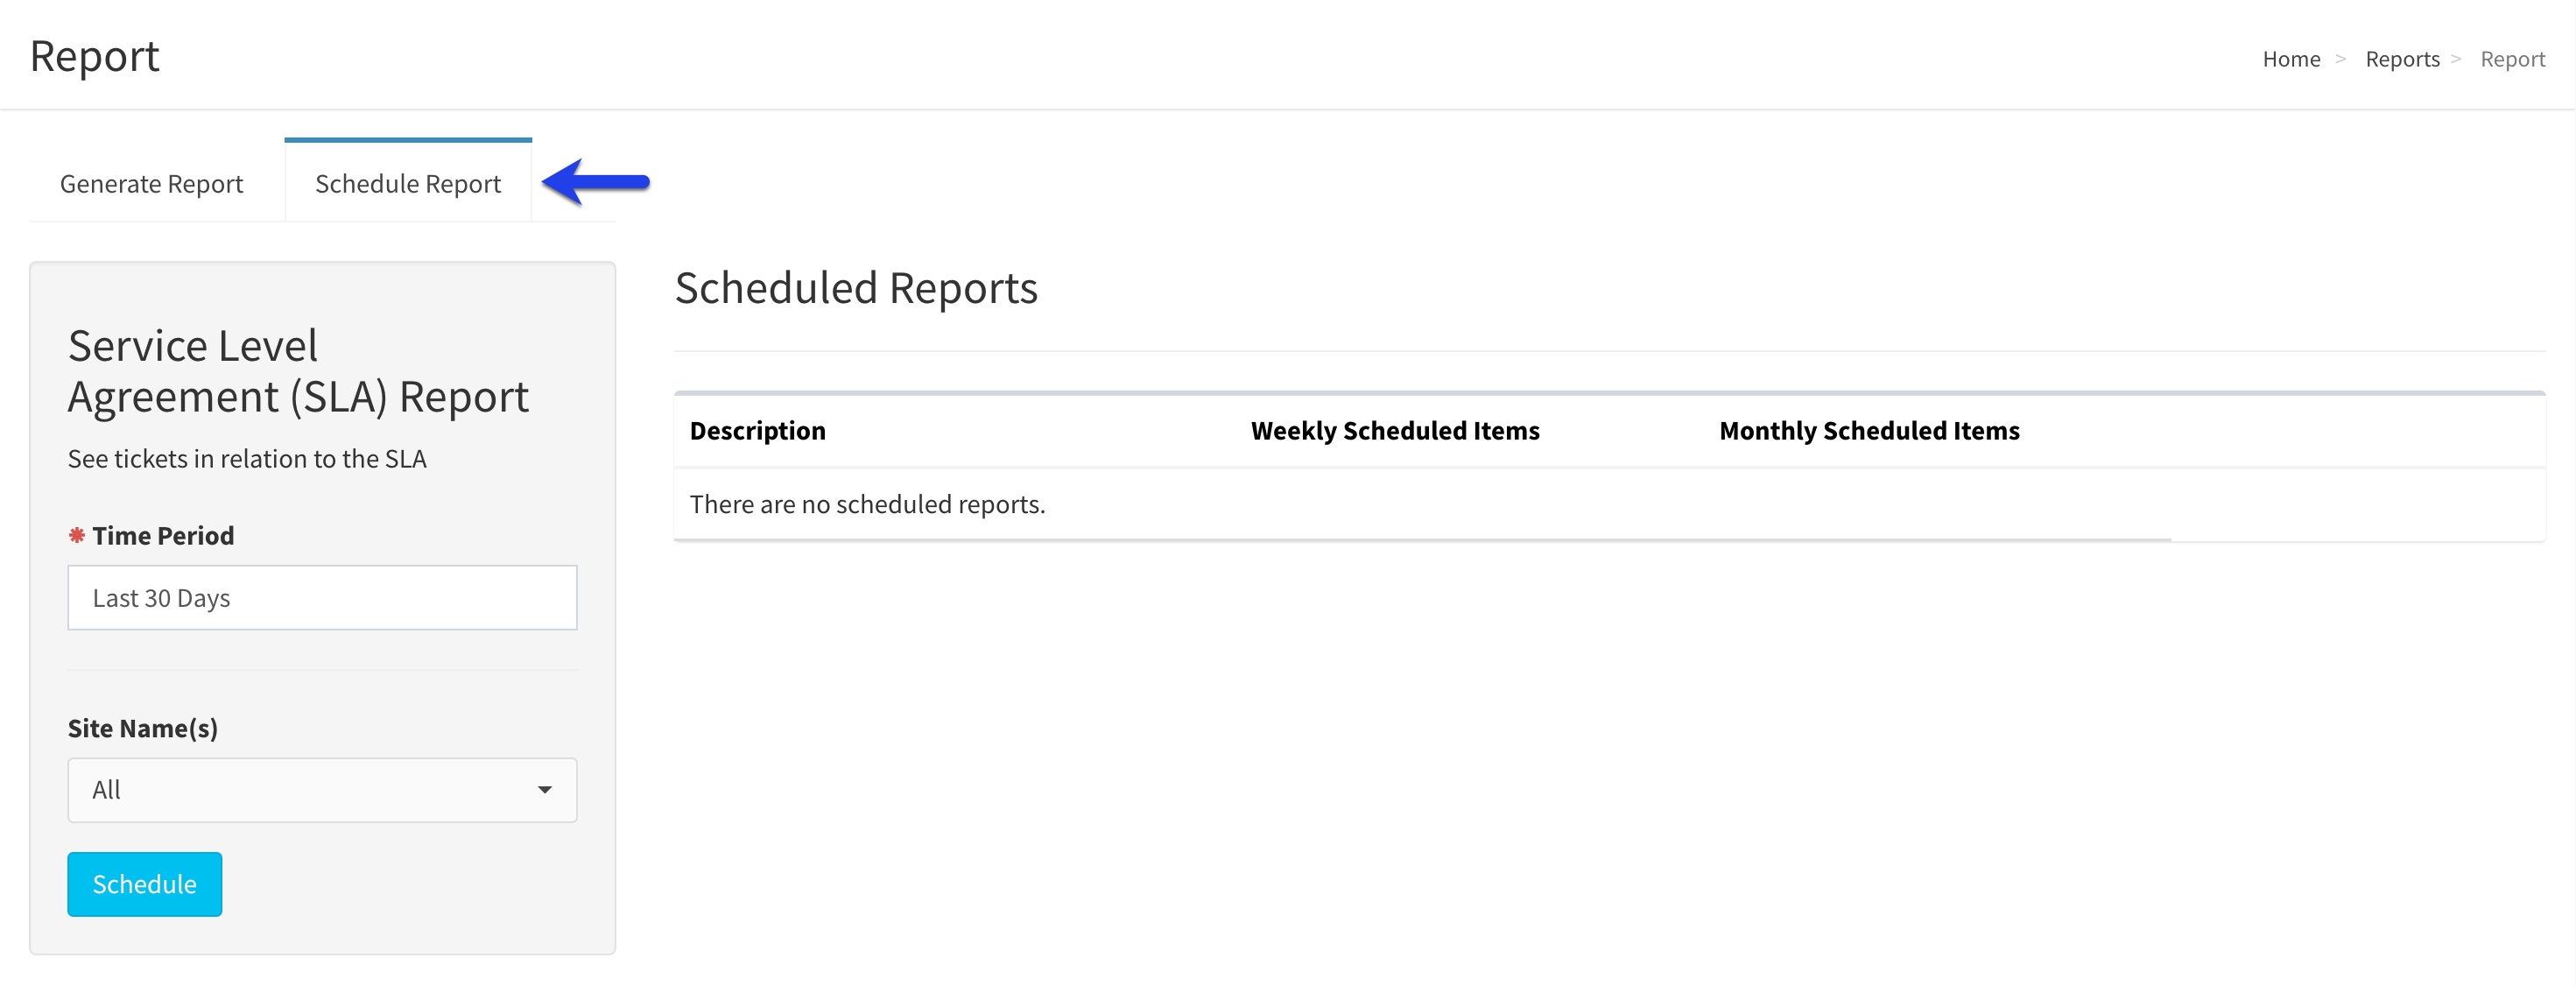 Schedule_Report_page_-_EN.jpg